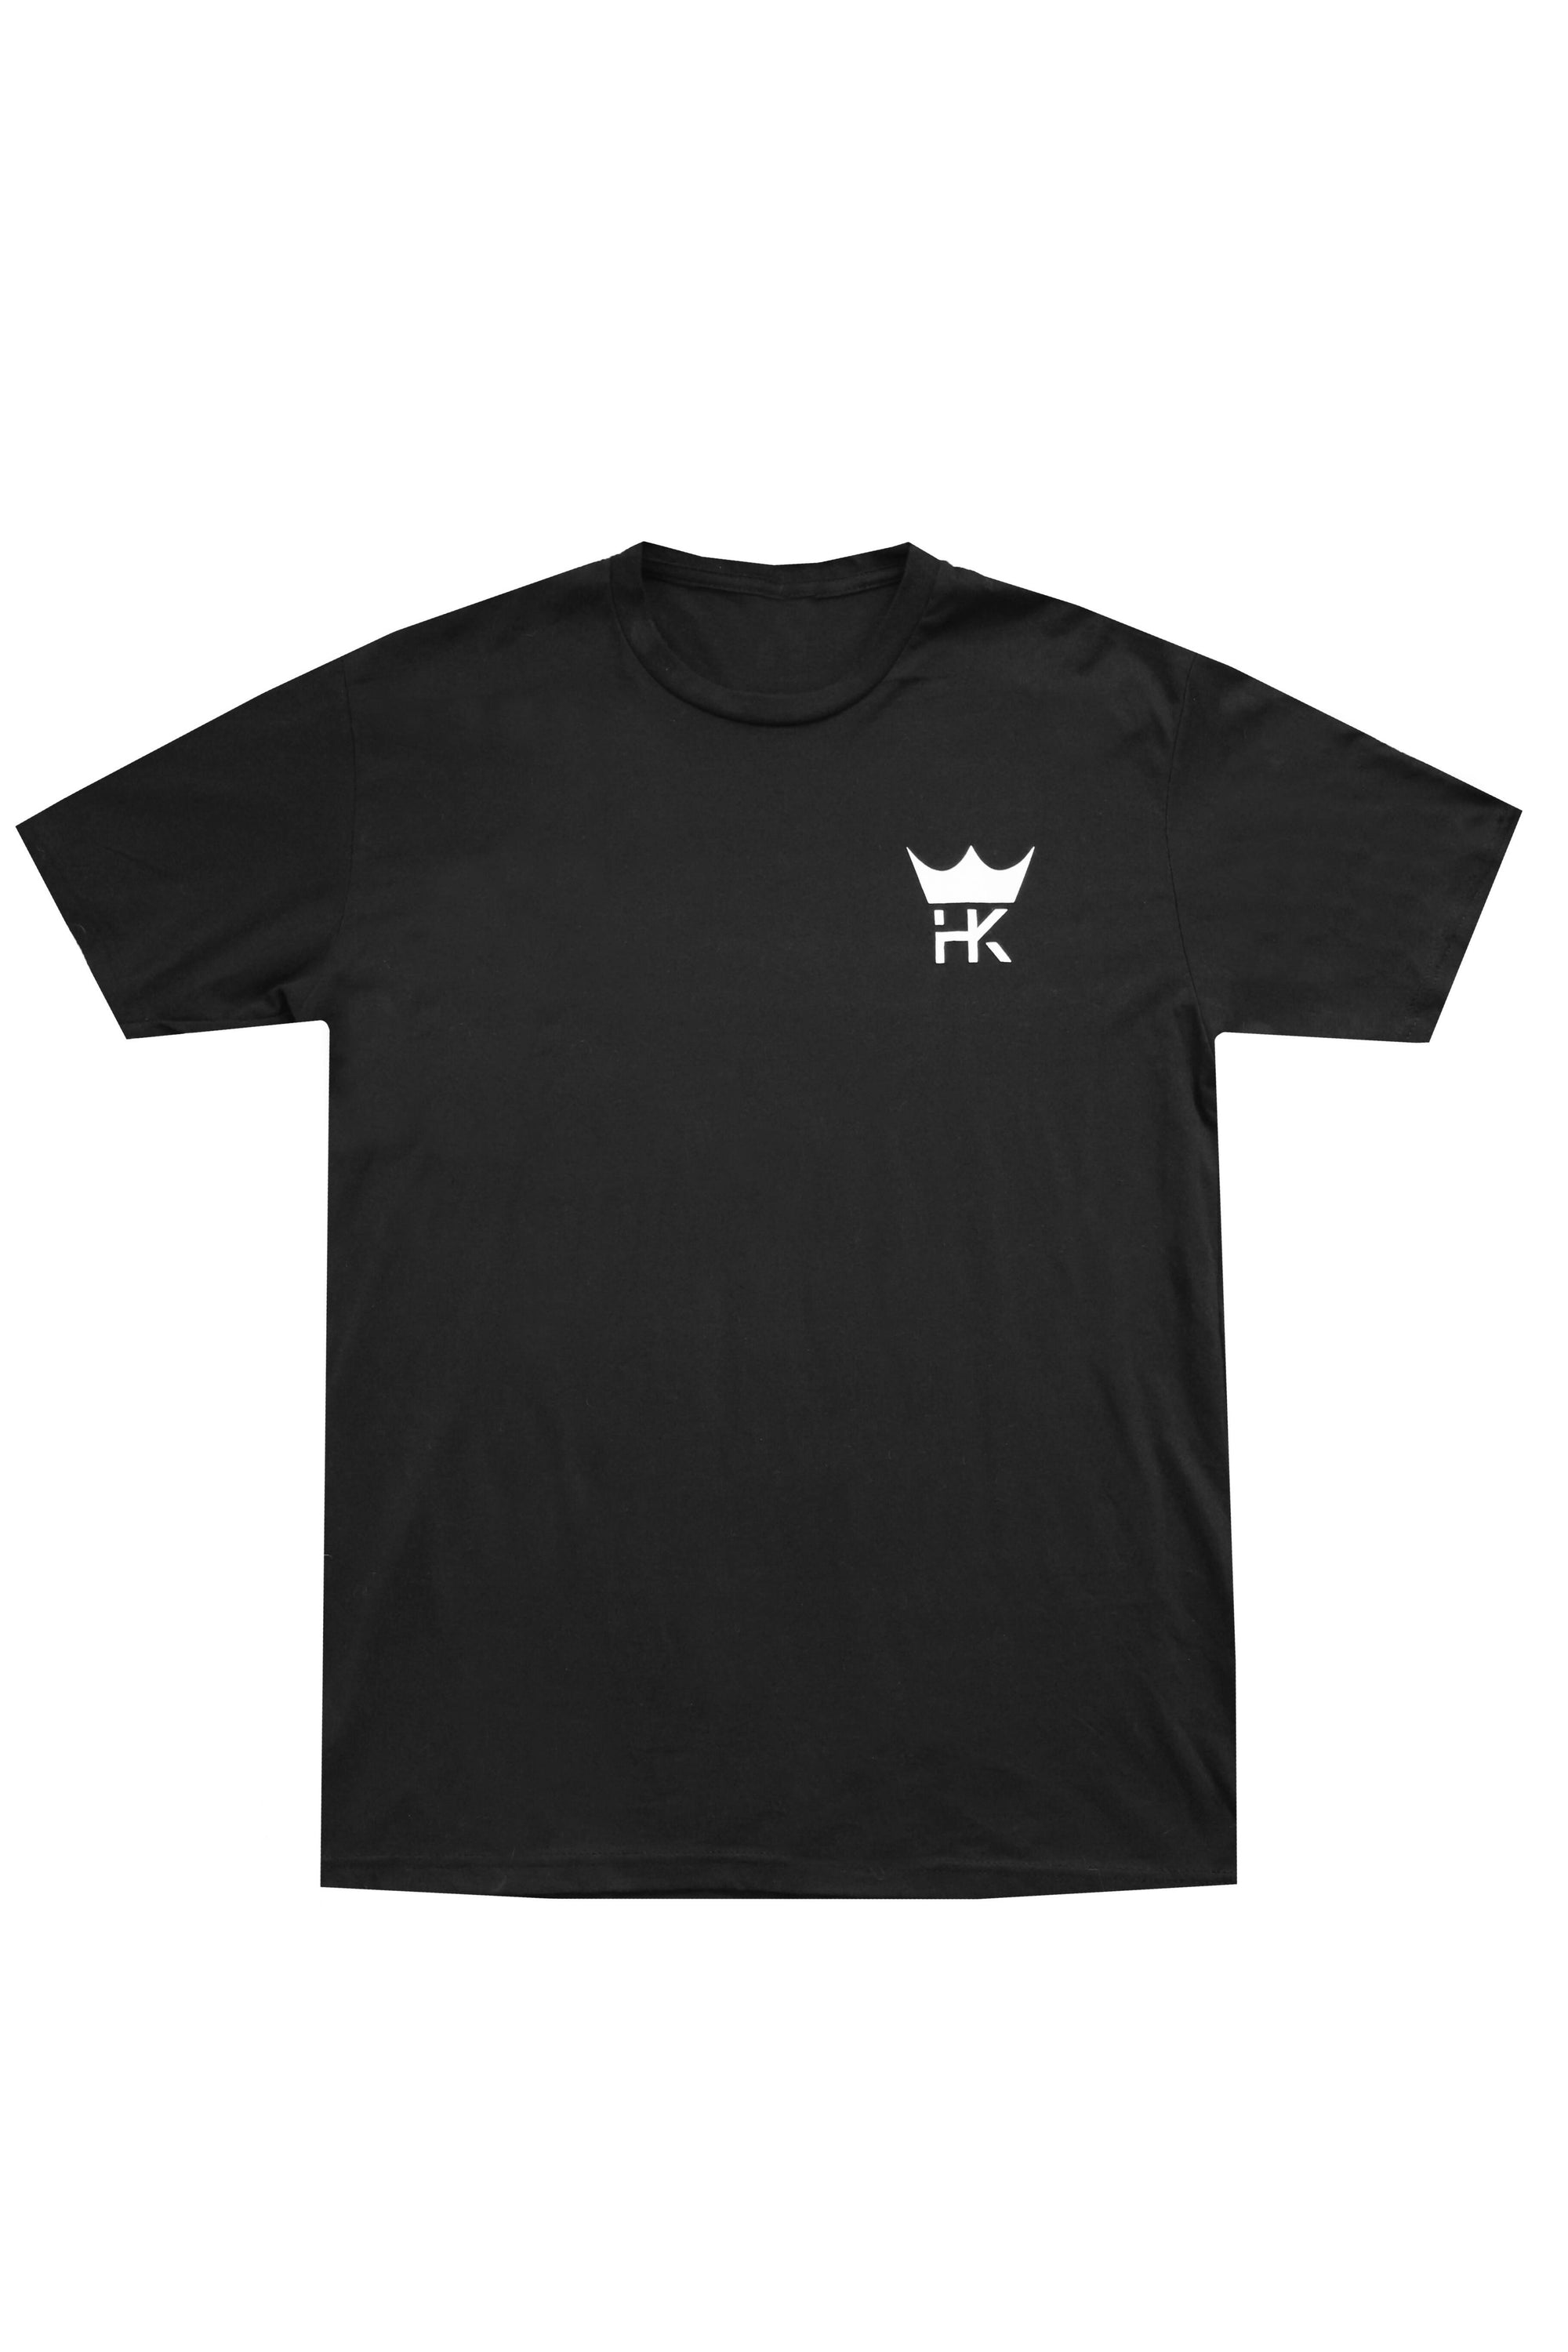 HK Cross tee shirt - Black